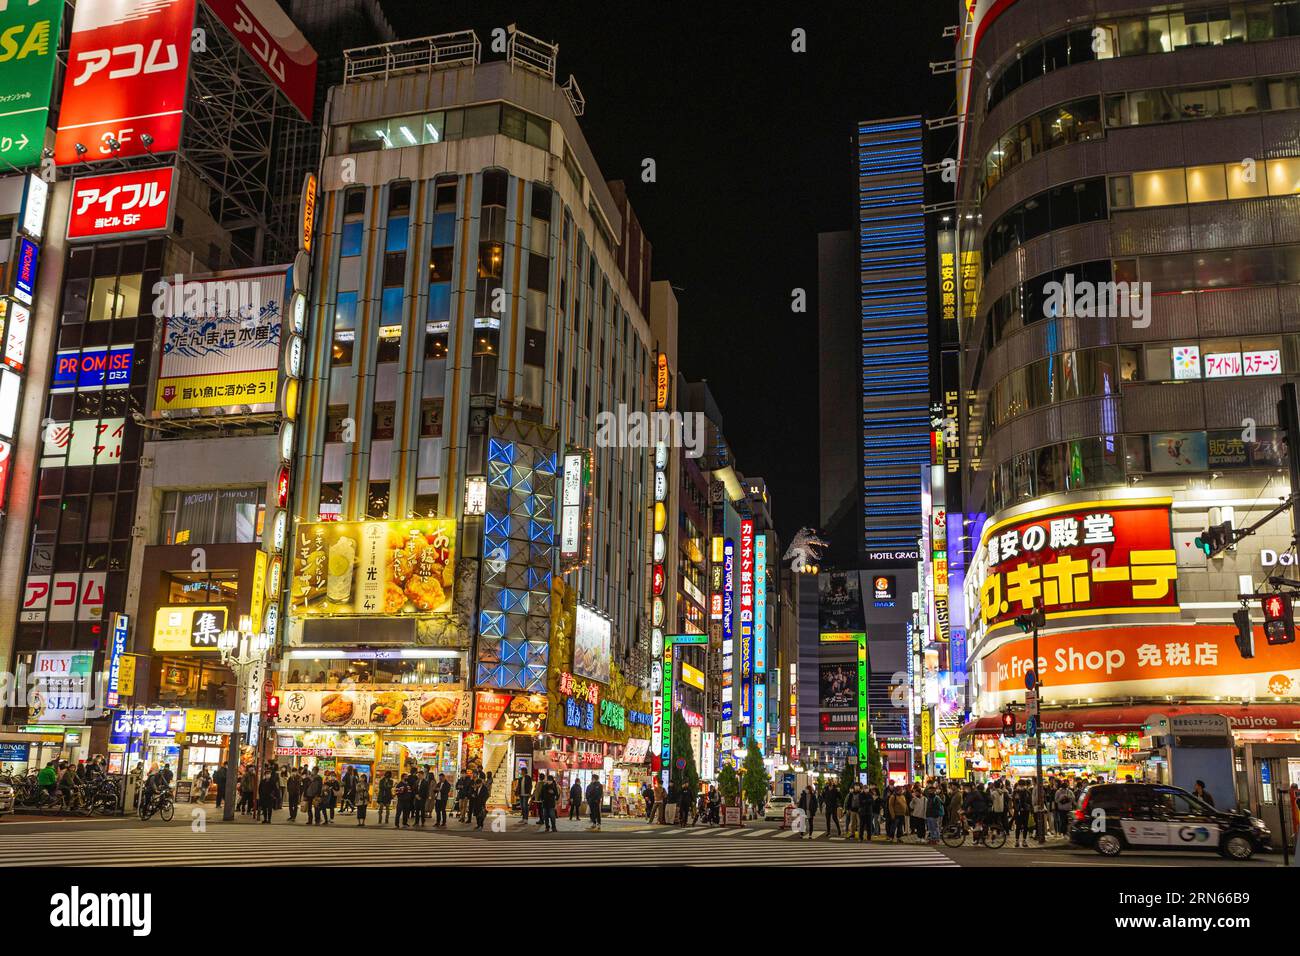 Bar, ristoranti e negozi, insegne al neon, Godzilla in cima all'Hotel Gracery, night shot, Kabukich? Quartiere dei divertimenti, Shinjuku, Tokyo Foto Stock